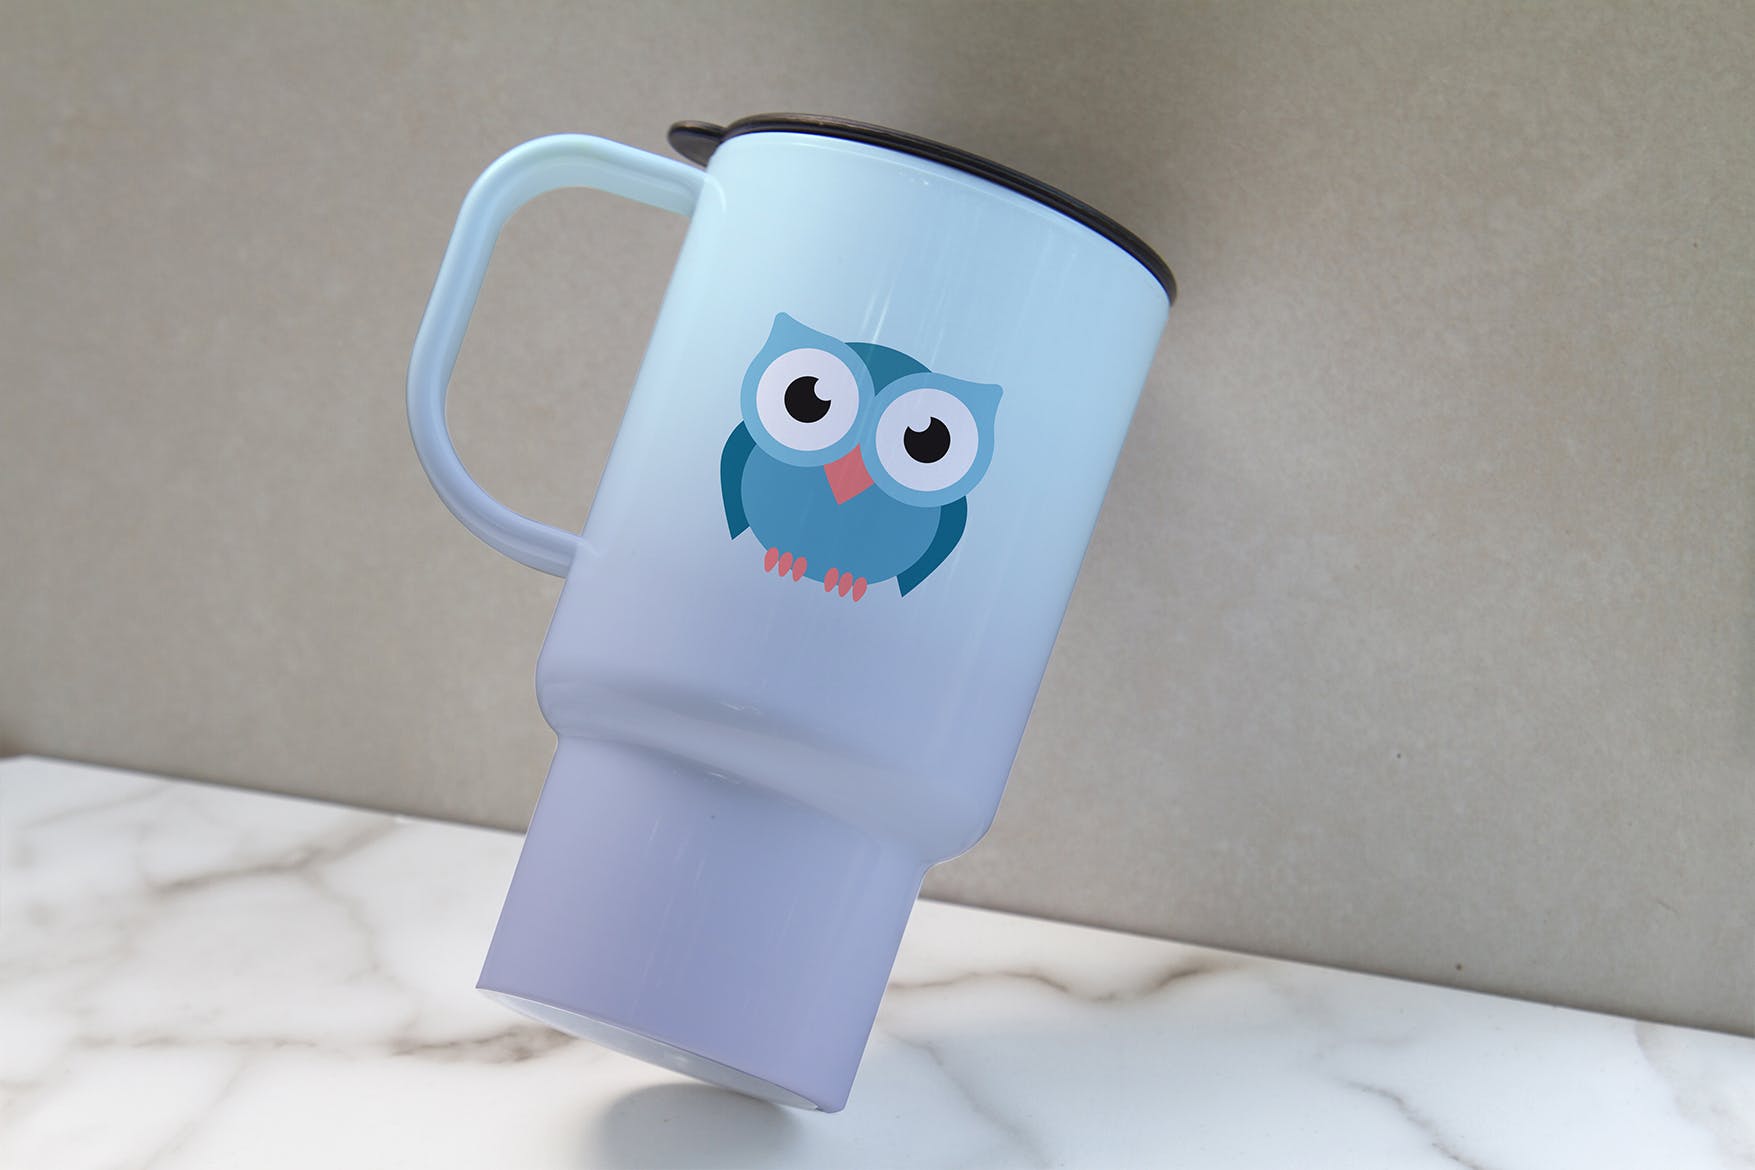 便携式杯子图案设计预览非凡图库精选 Portable Cup Mockup插图(2)